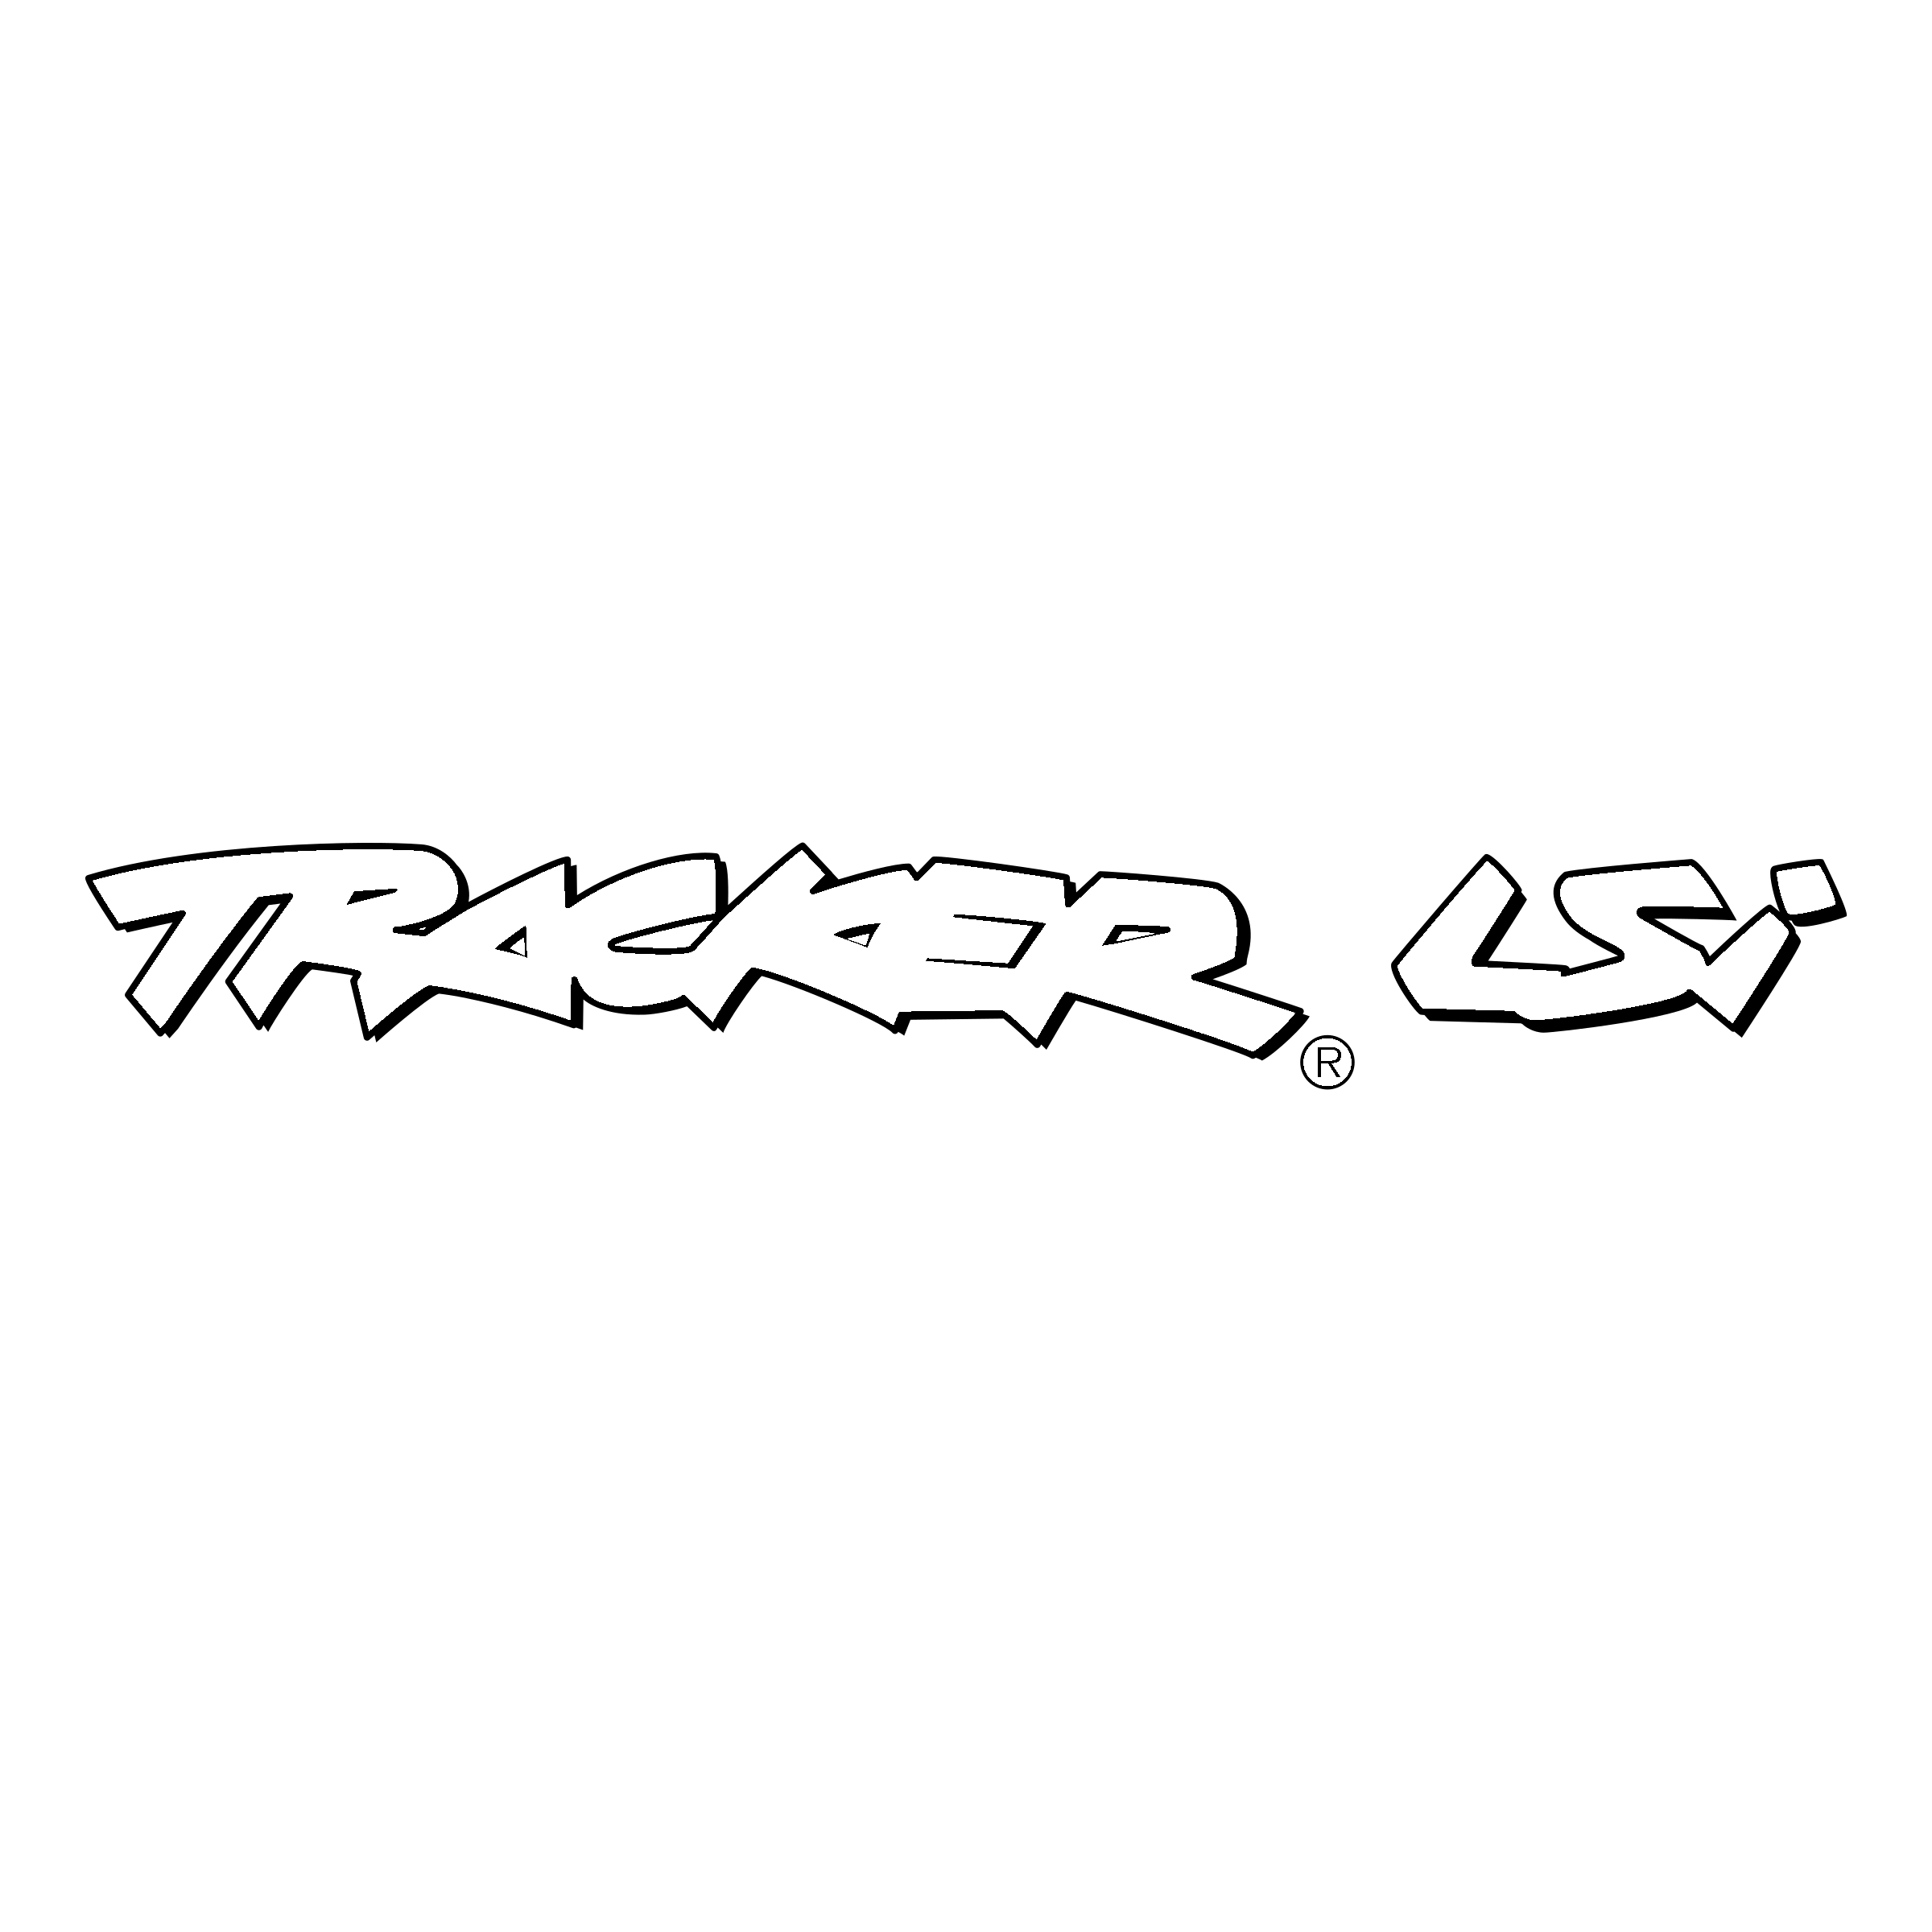 LSI Logo - Tracker LSi Logo PNG Transparent & SVG Vector